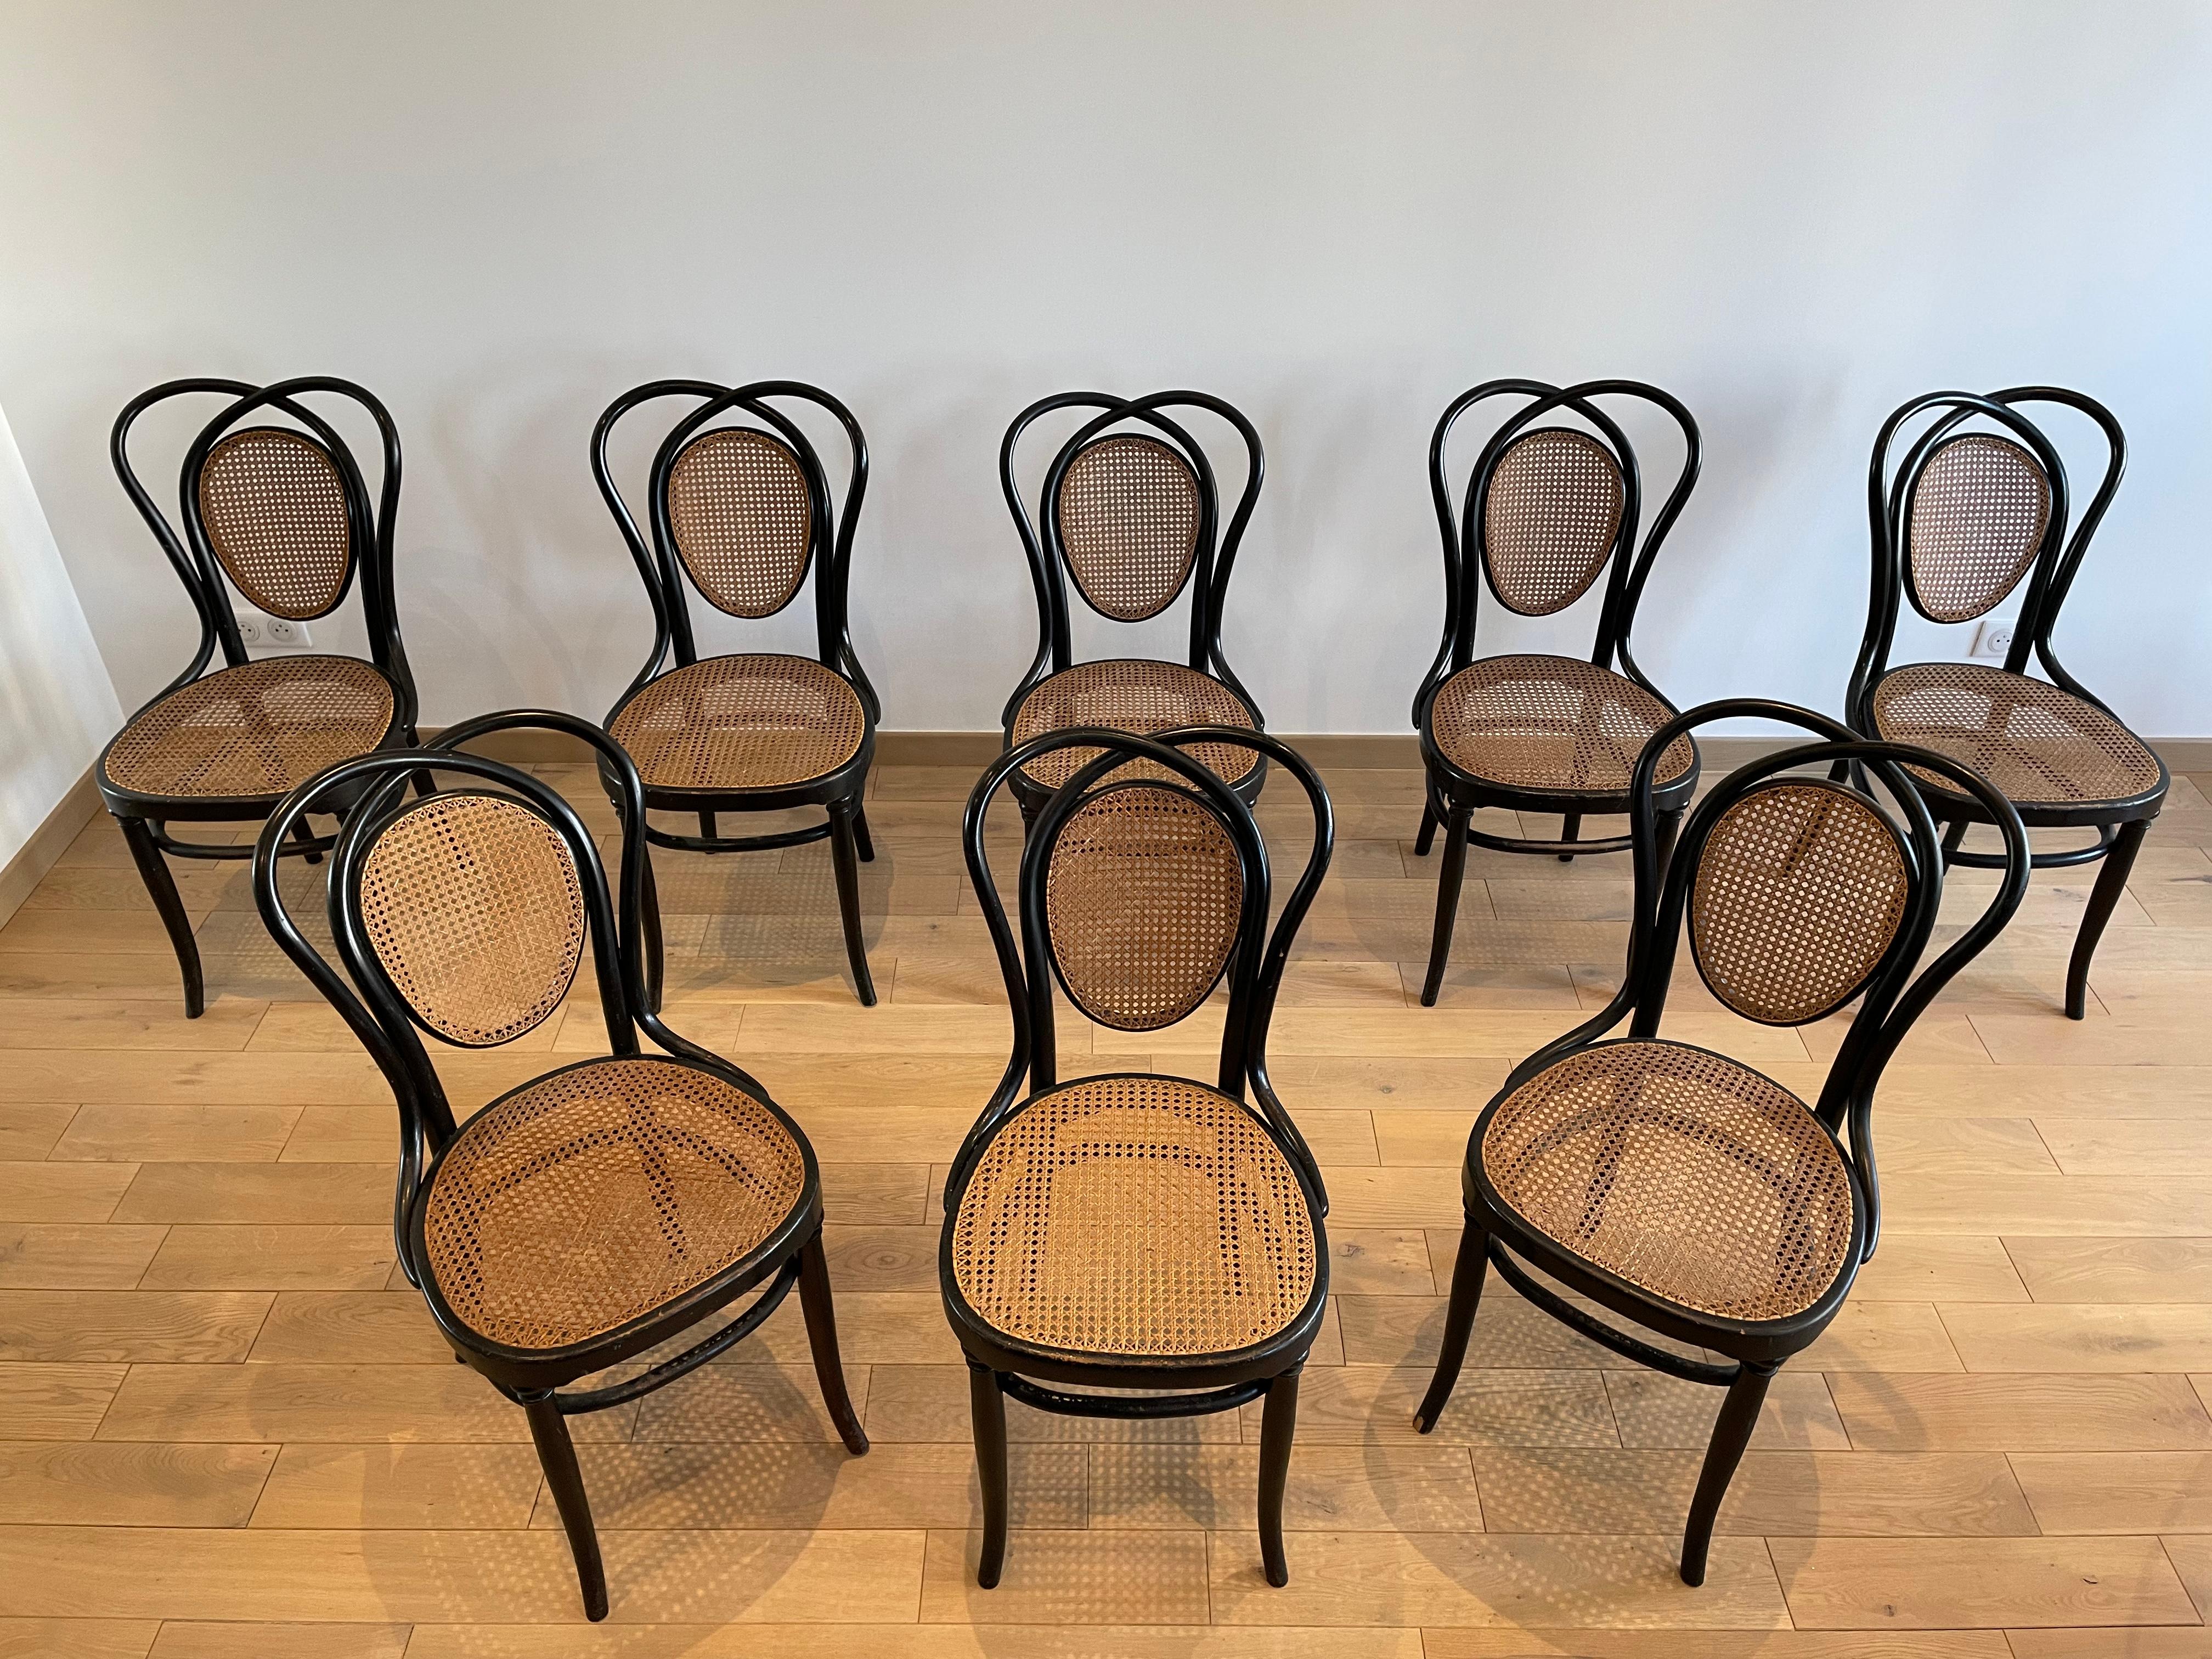 Satz von 8 Wiener Bugholzstühlen, Modell N.33 von Jacob & Joseph Kohn, aus den Jahren 1890 - 1900. Die Strukturen und die Bespannung aller Stühle sind in gutem Zustand (Fotos). Handgemachter Rohrstock. Alle Stühle sind gestempelt und